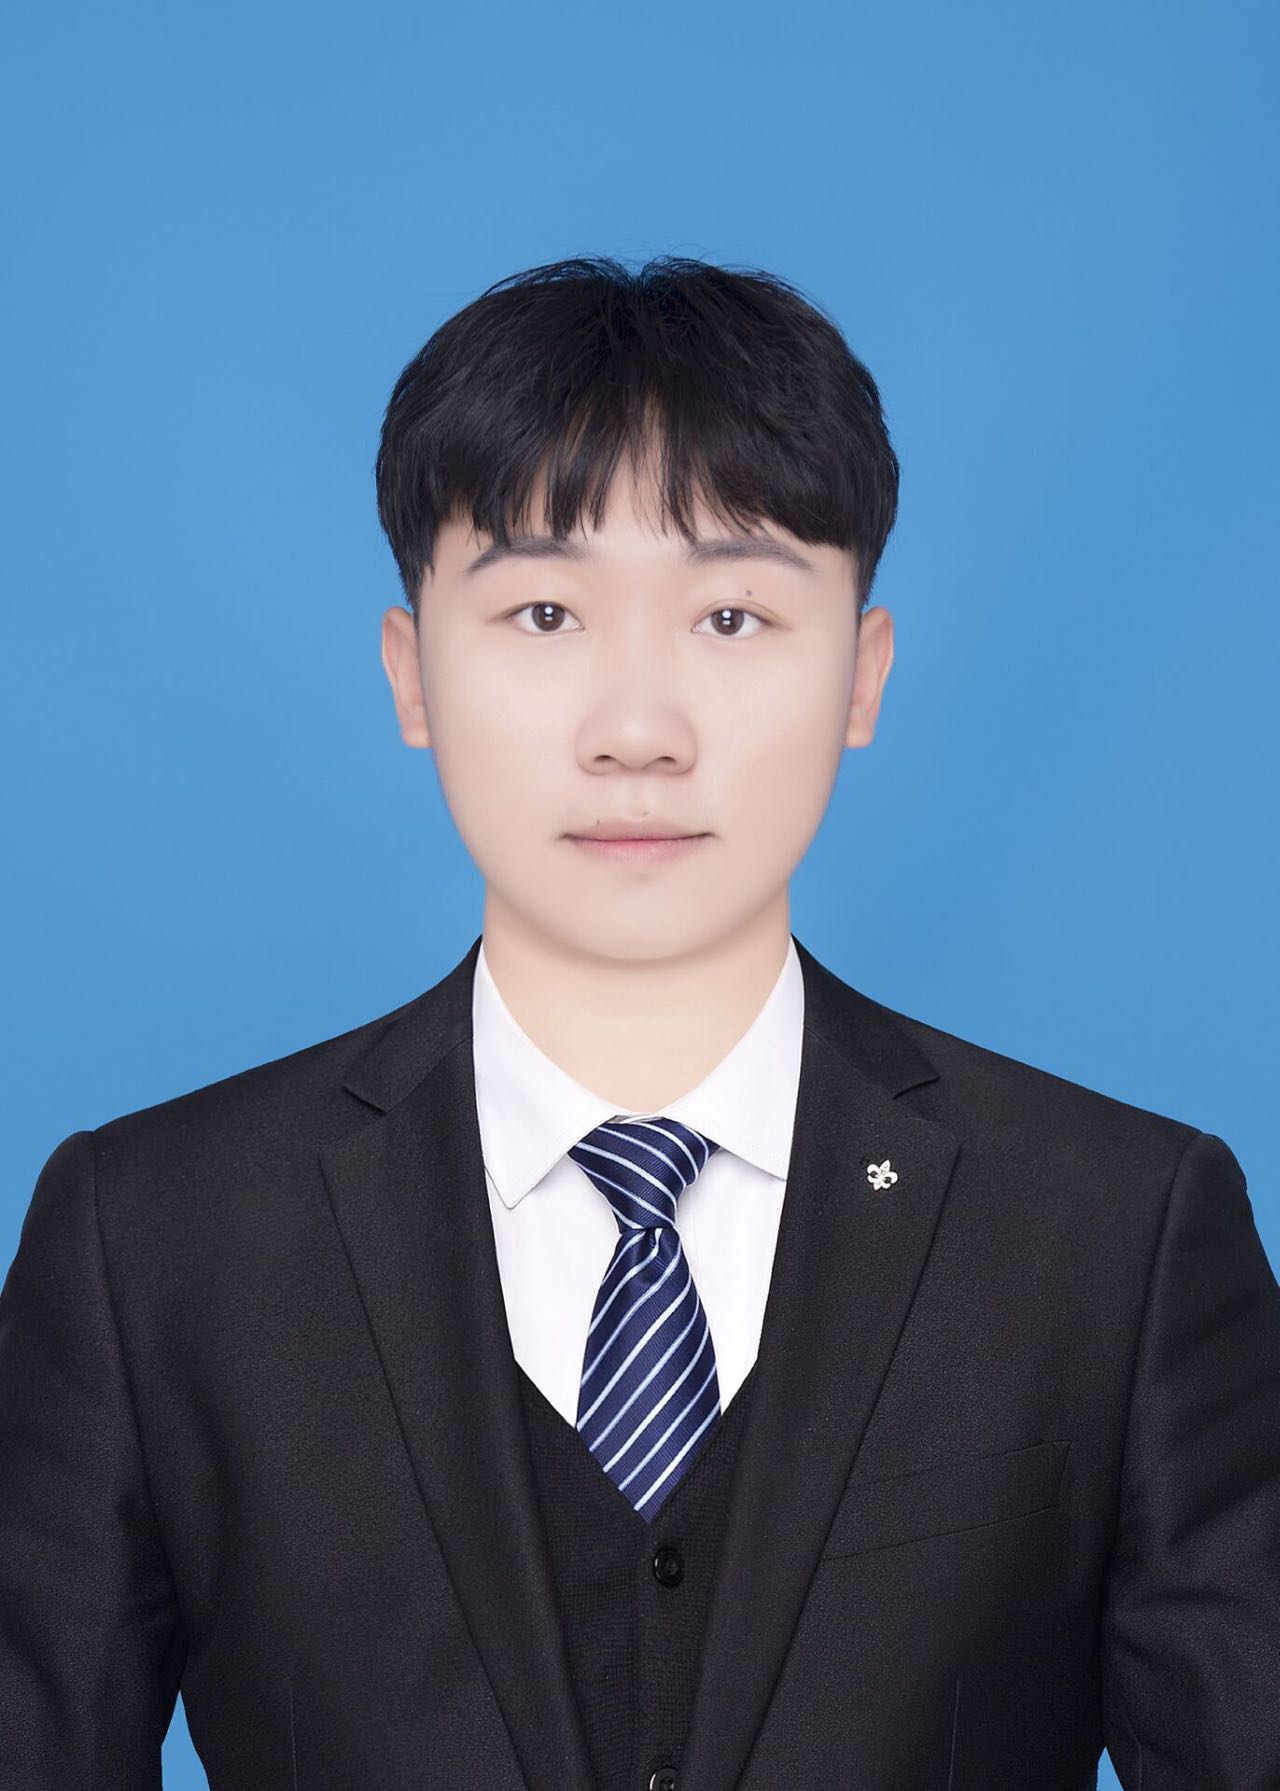 范智煊——2022级思想政治辅导员